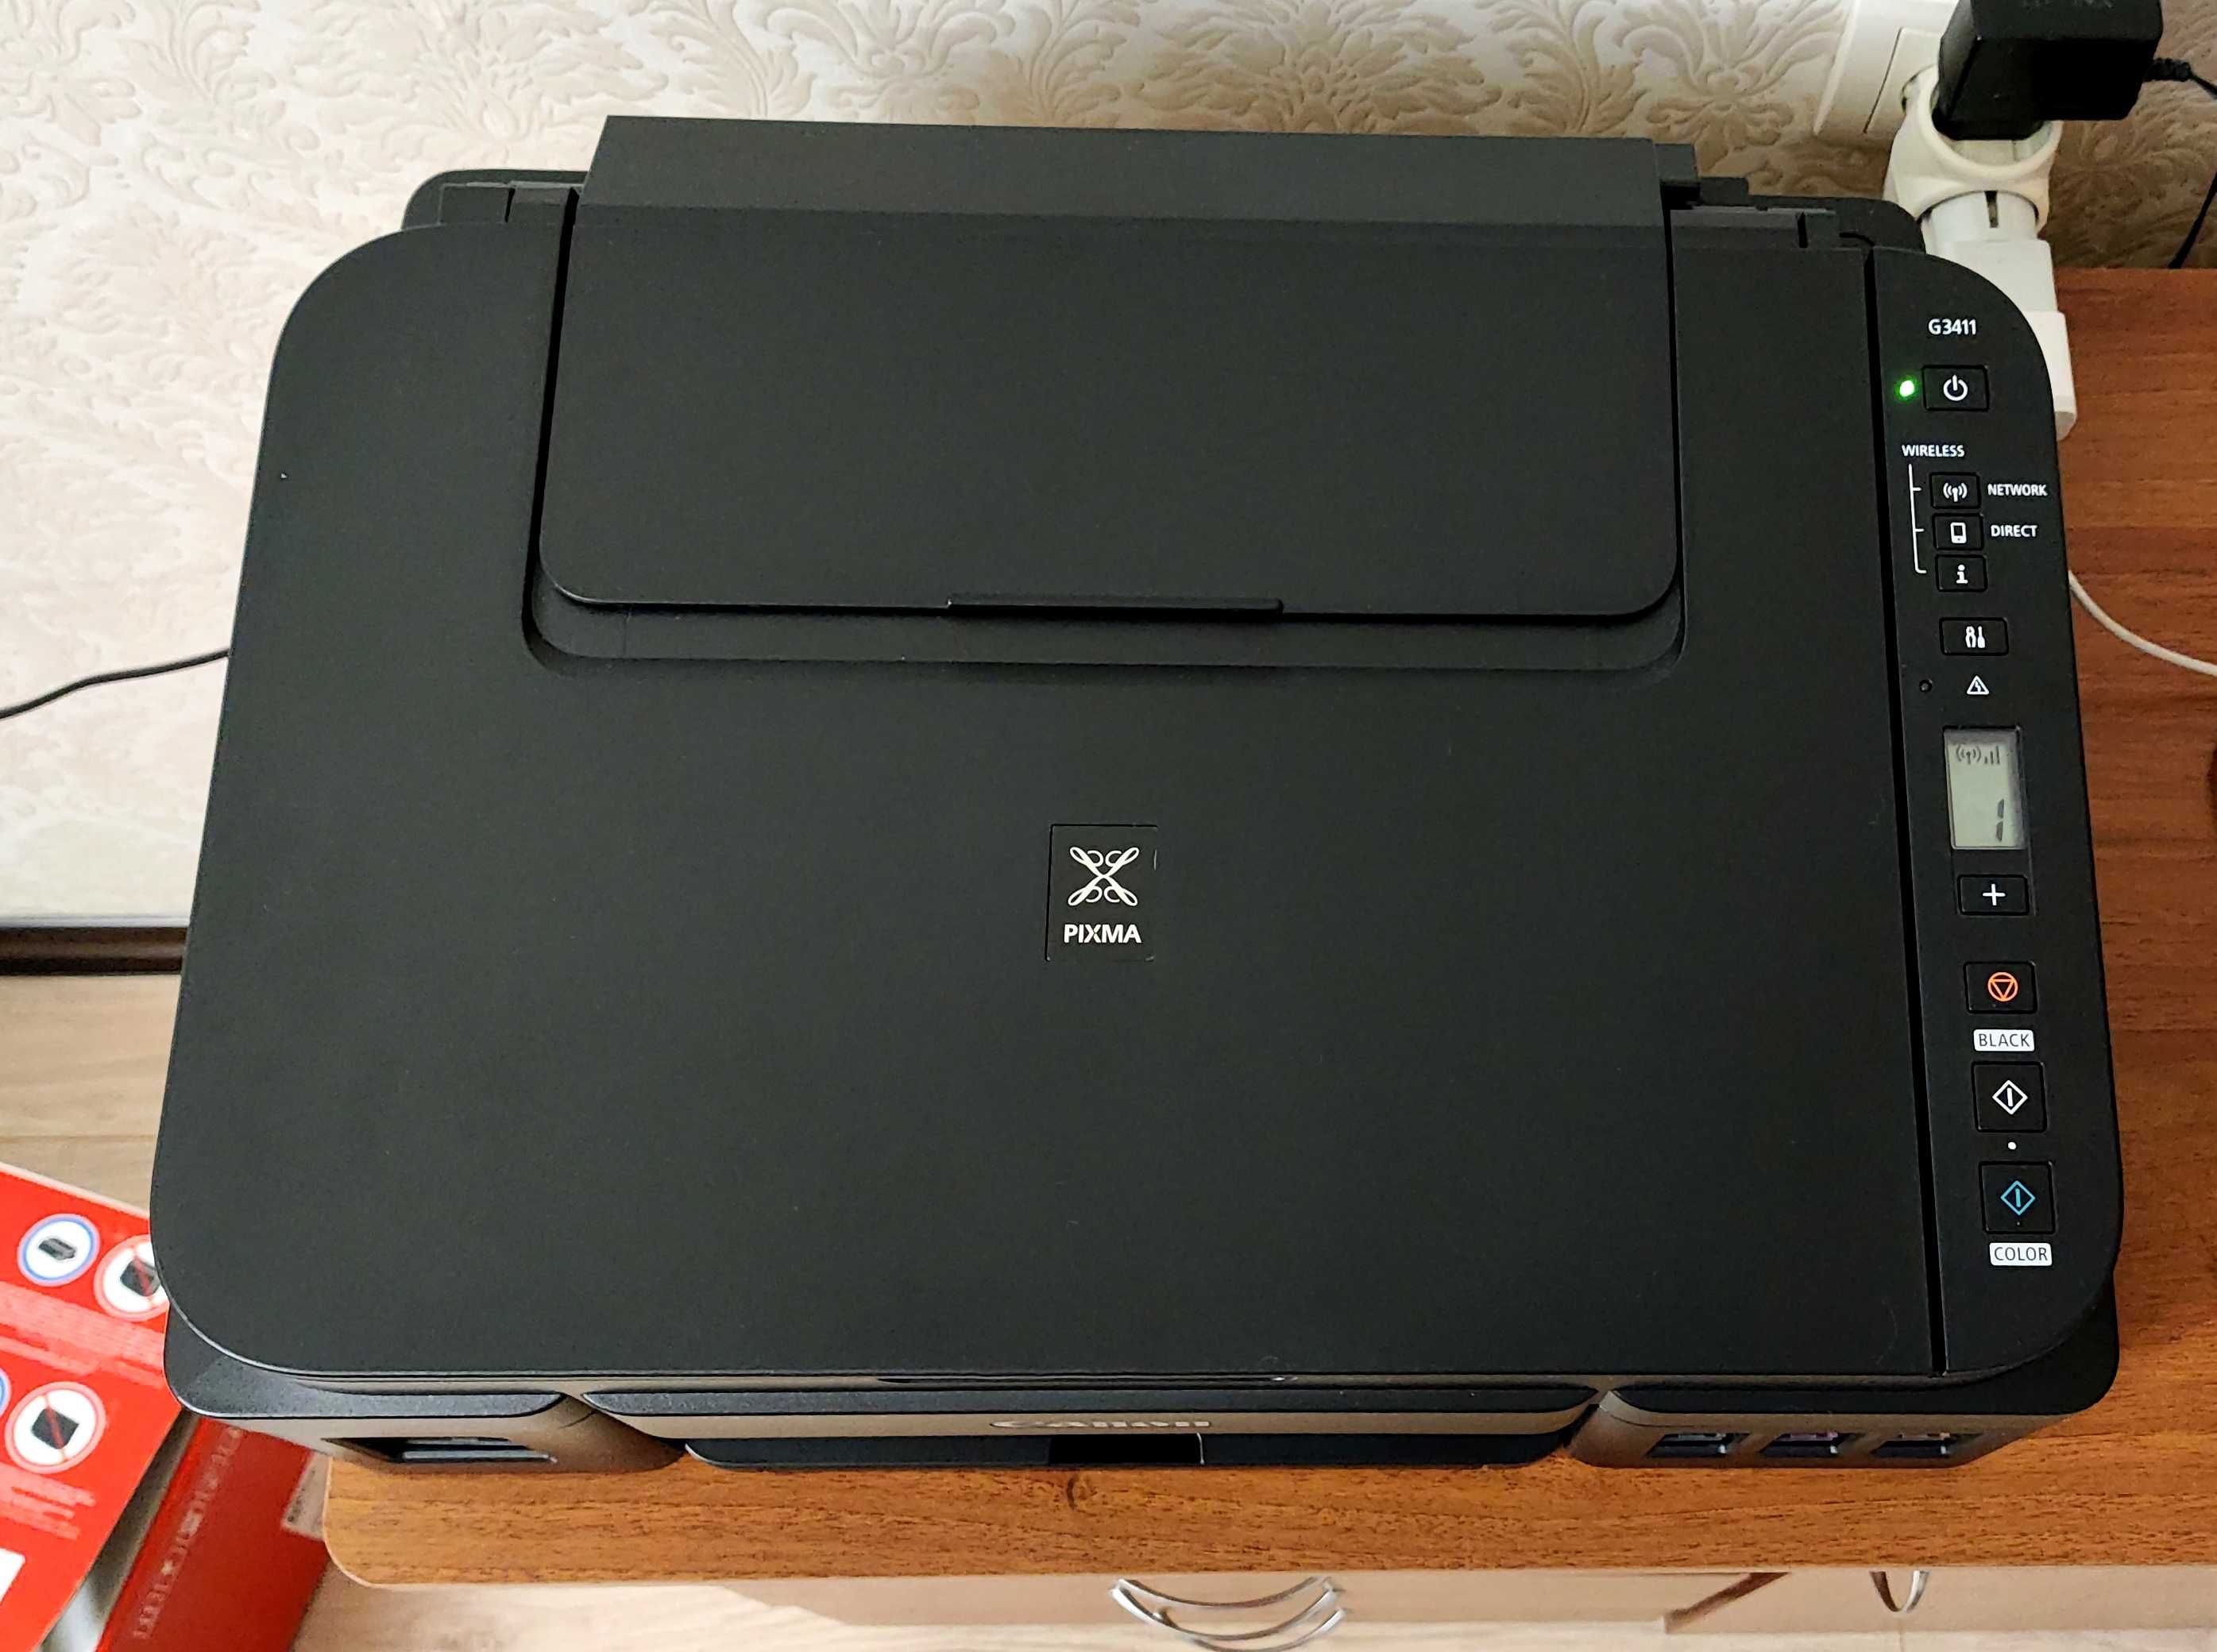 БФП принтер canon pixma g3411 з Wi-Fi, сканер, ксерокс